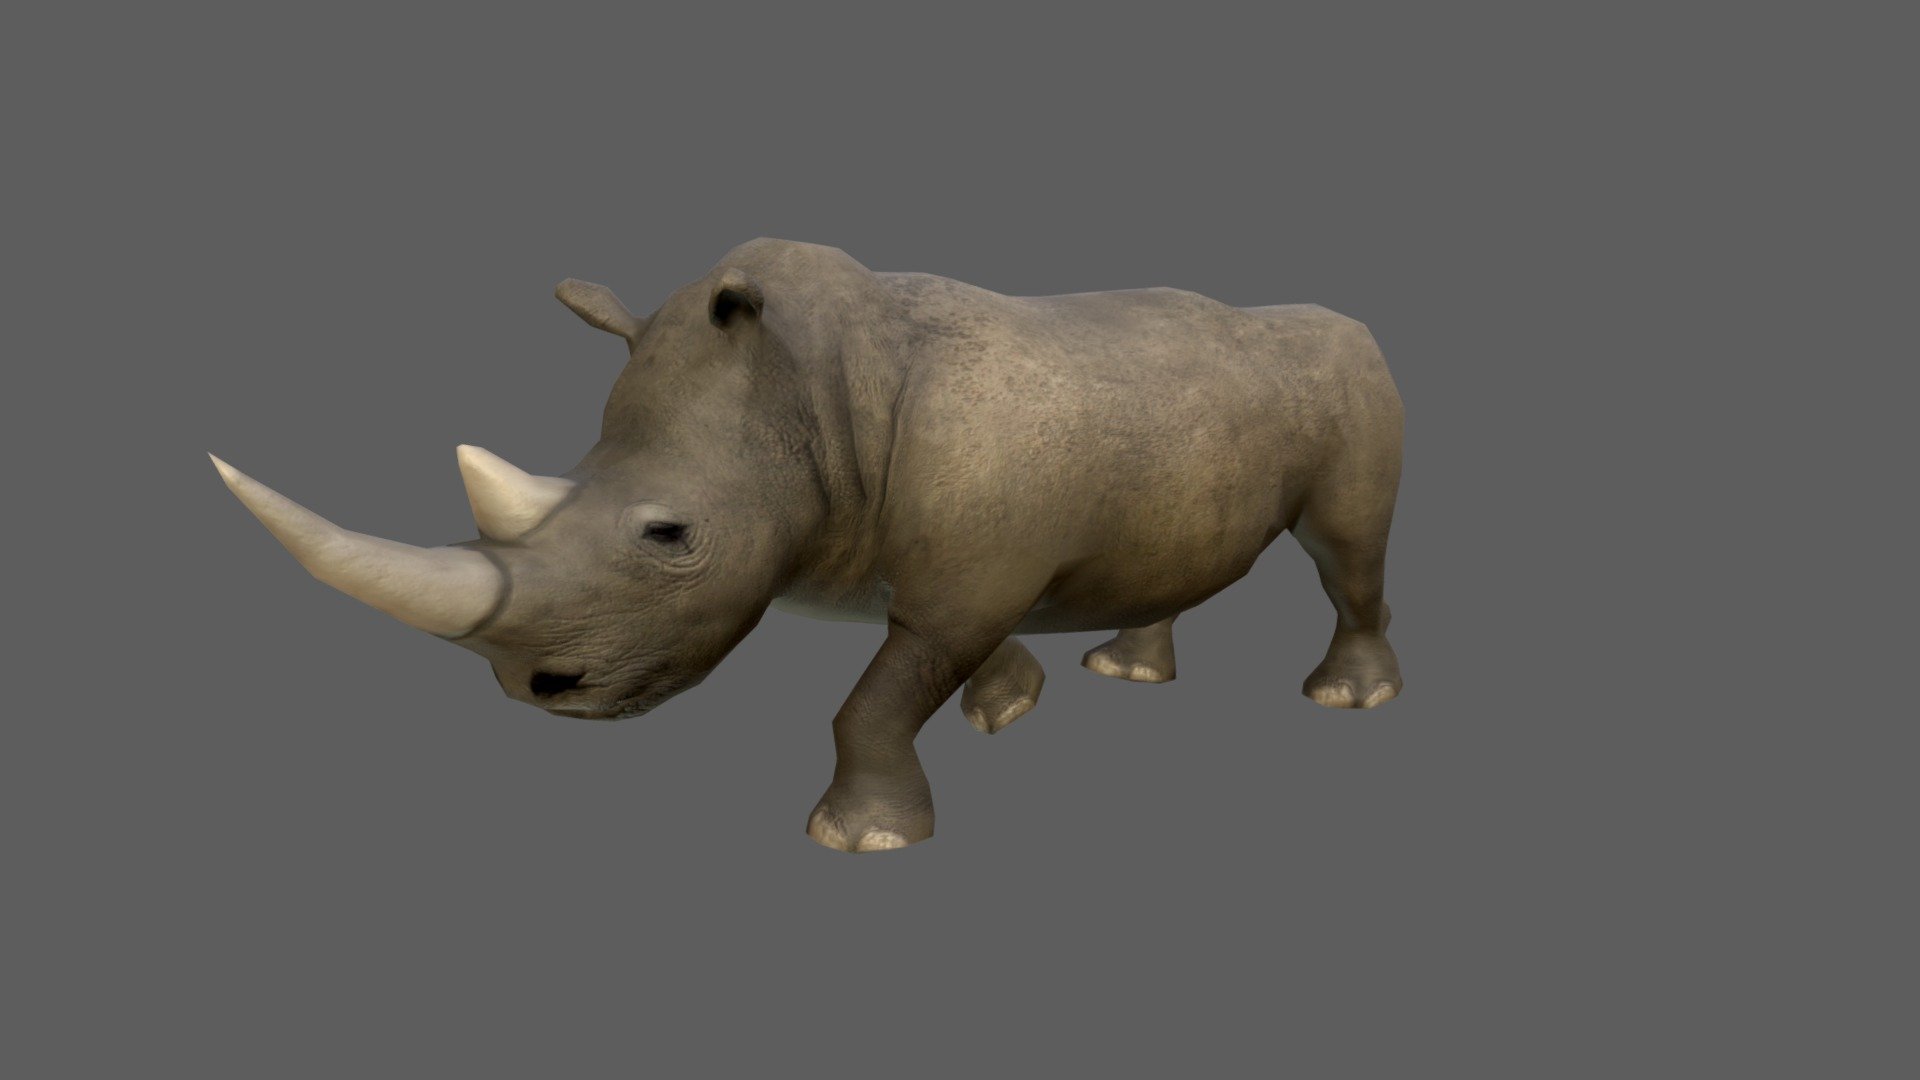 Rhinoceros 3D 7.31.23166.15001 free downloads